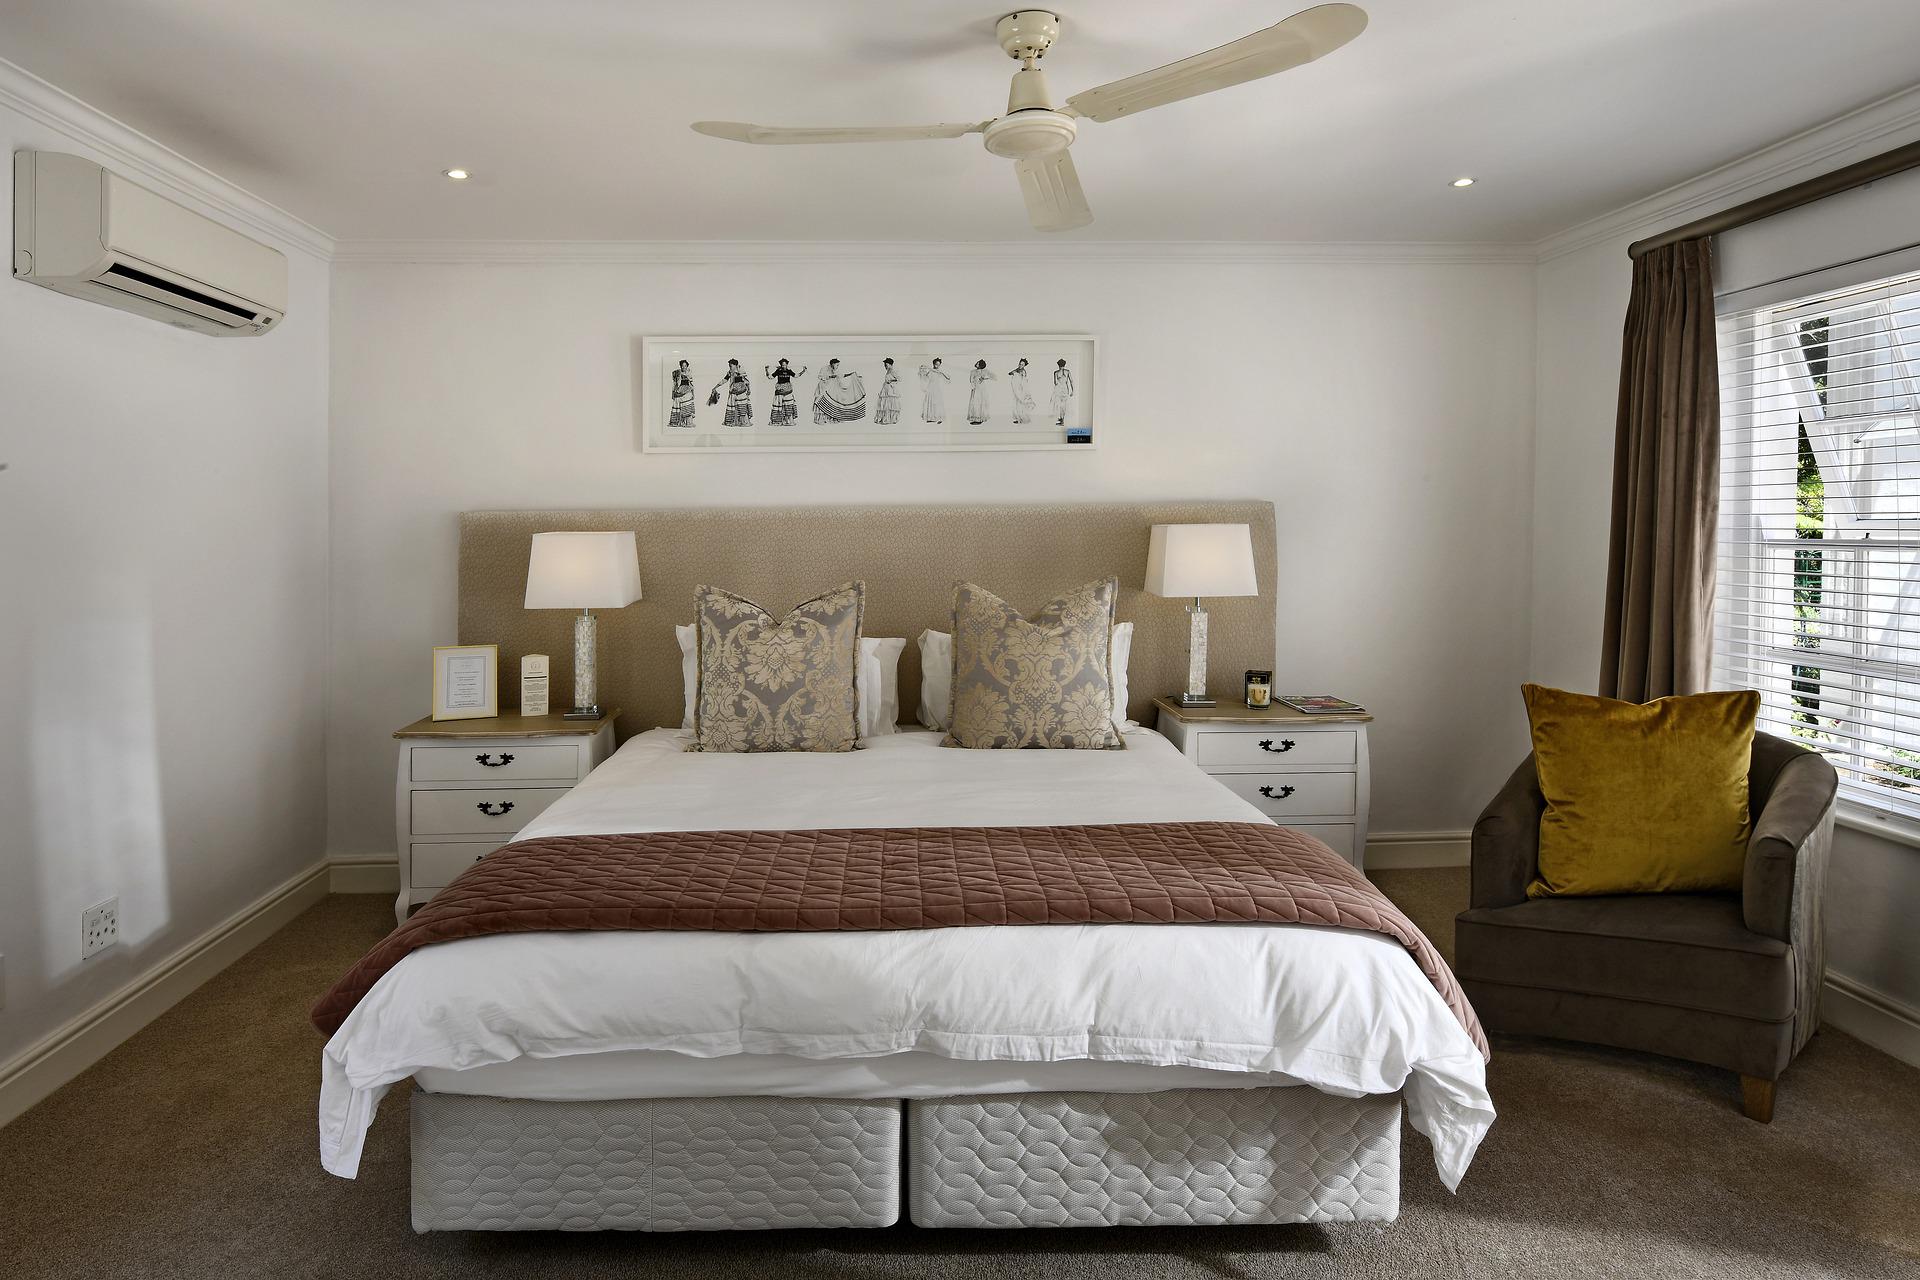 Jakość zagłówka a wybór łóżka tapicerowanego